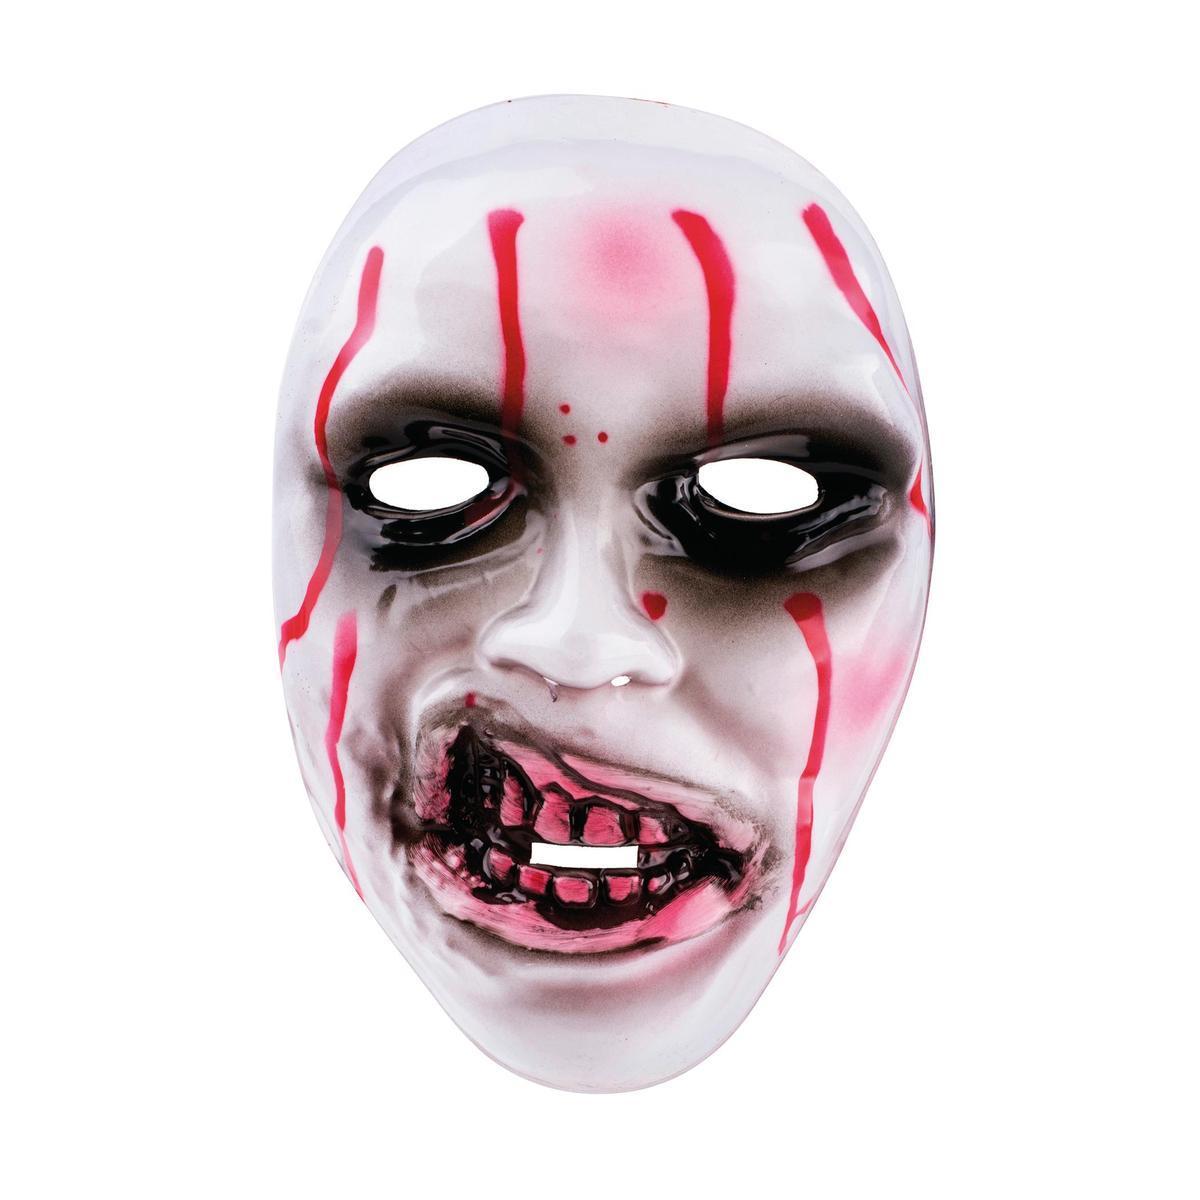 Masque ensanglanté - Plastique - 9,5 x 17,5 x H 24 cm - Blanc et rouge